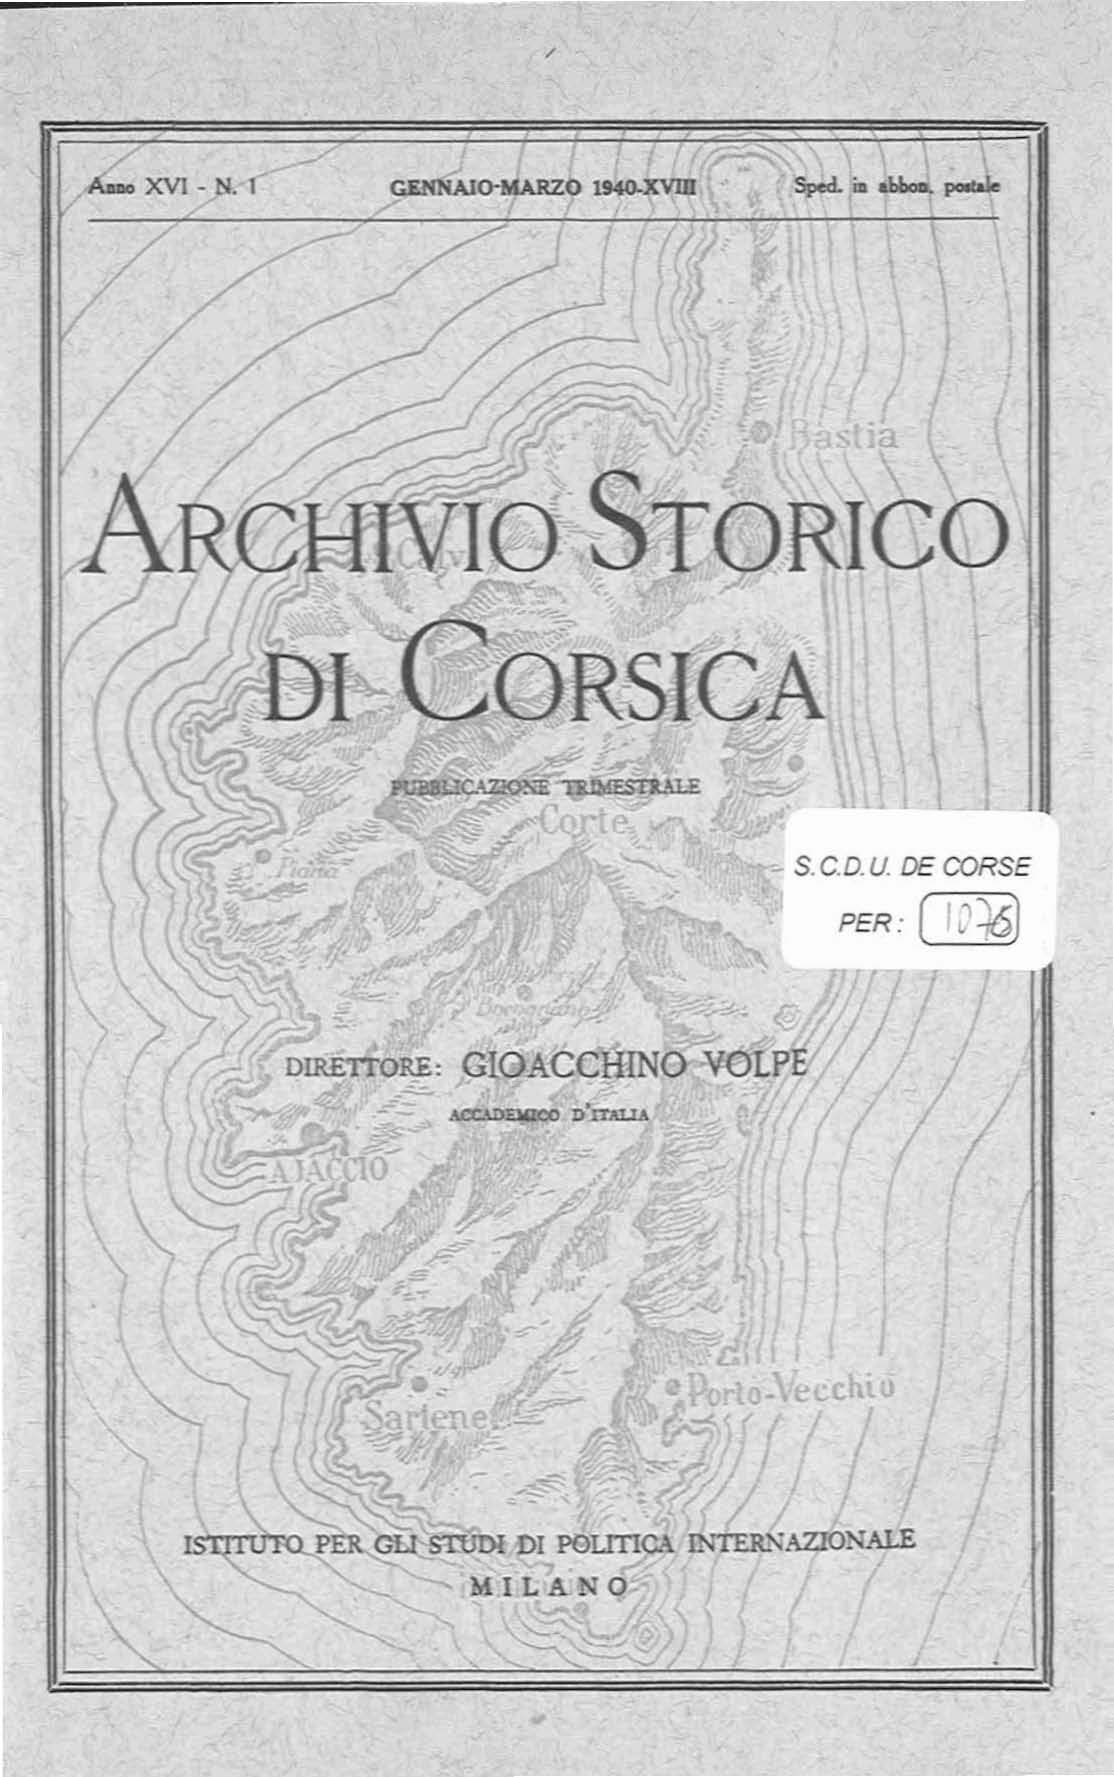 >Archivio Storico di Corsica (1940)